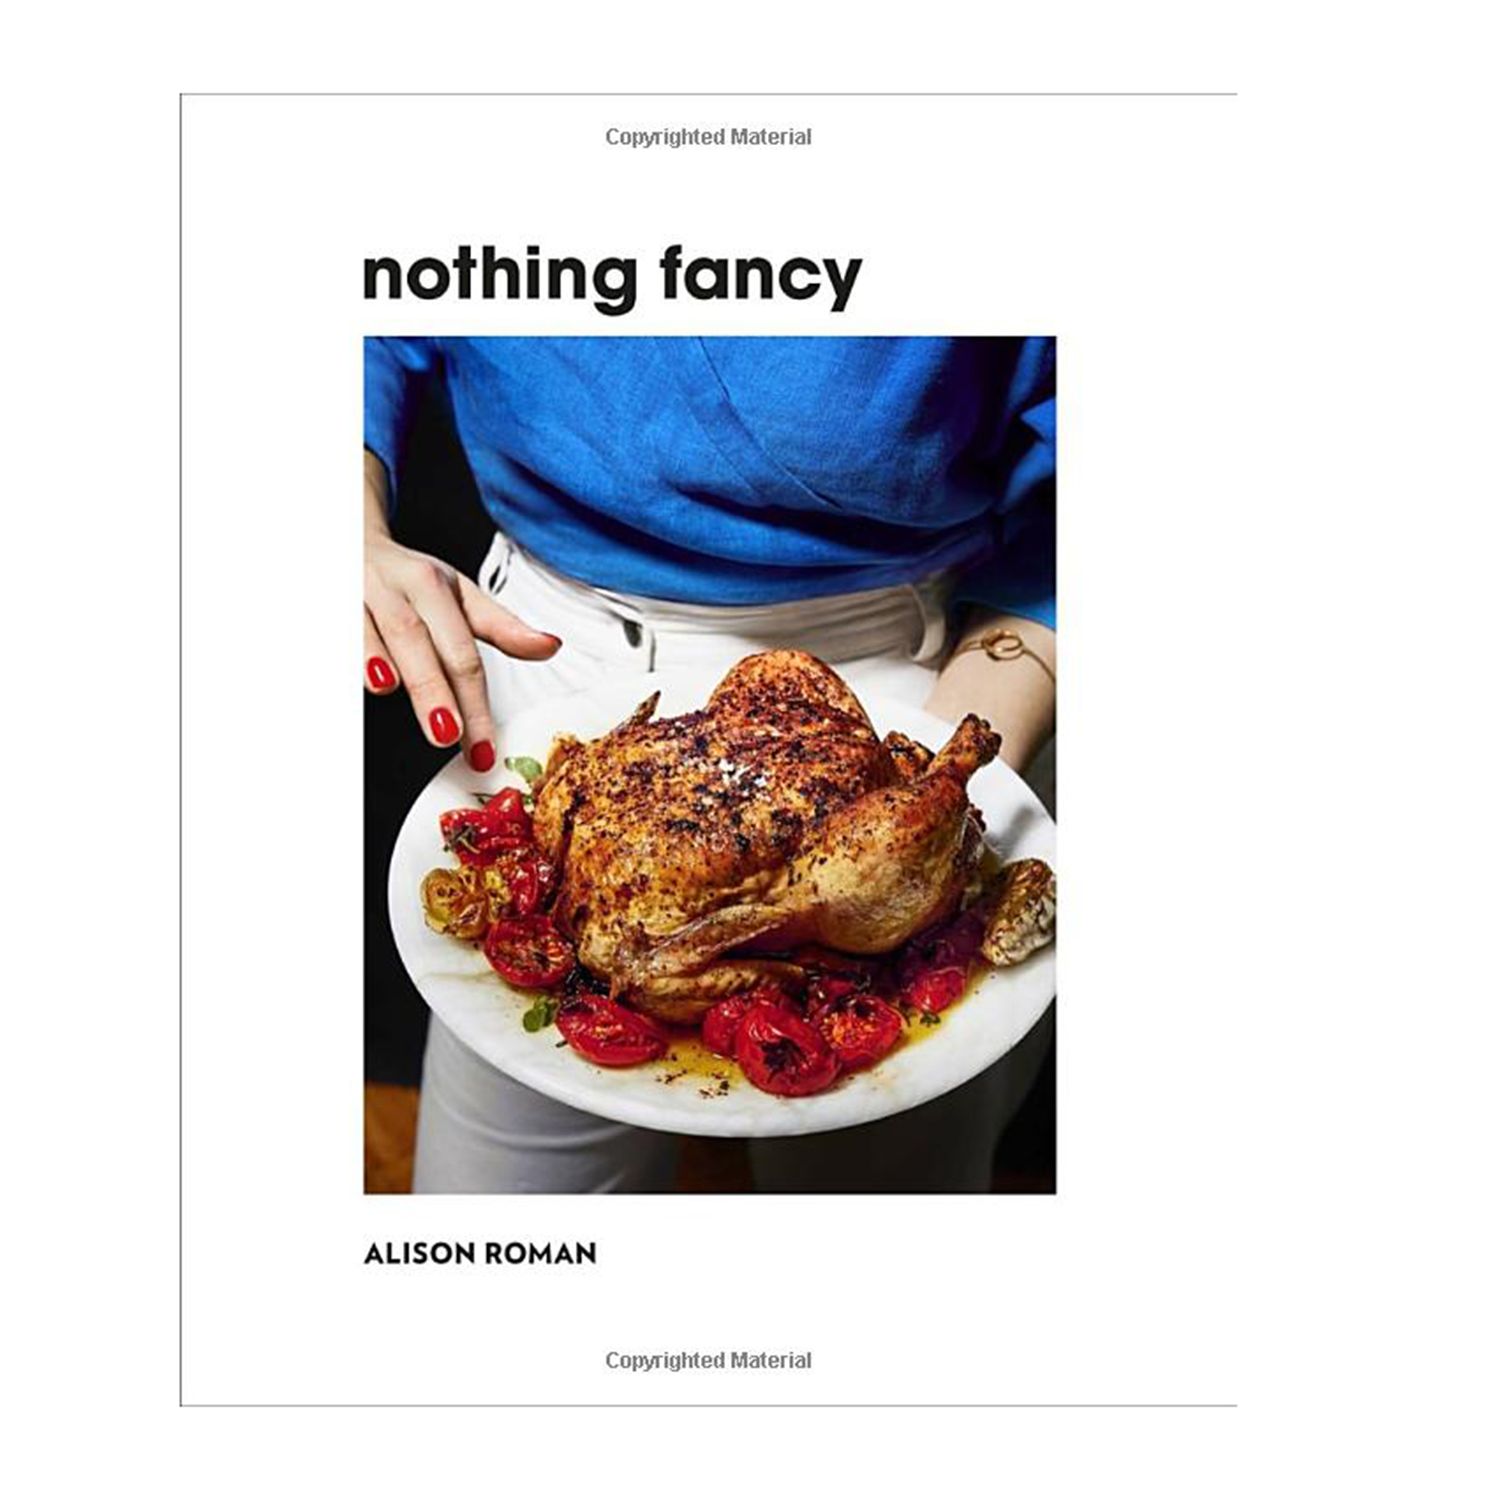 6 խոհարարական գիրք, որոնք նույնքան զվարճալի են, որքան լավ գիրքը